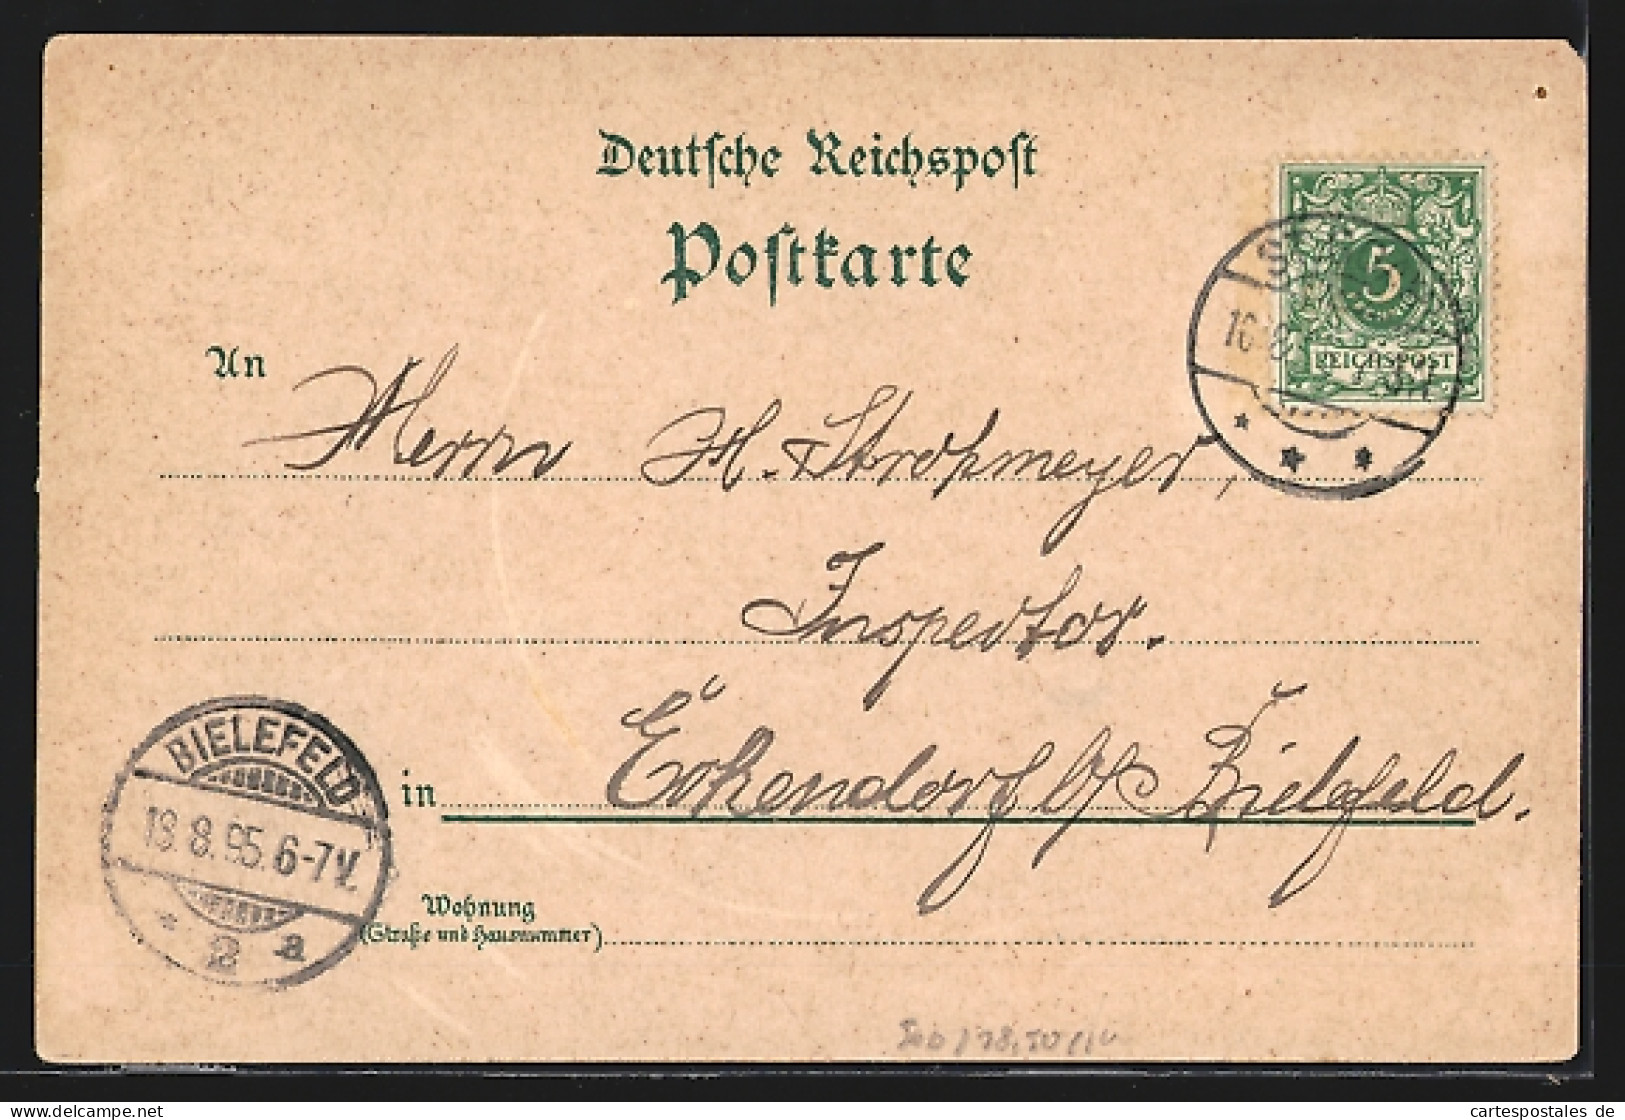 Vorläufer-Lithographie Capellen / Koblenz, 1895, Hotel Lahneck, Schloss-Stolzenfels, Uferpartie  - Koblenz